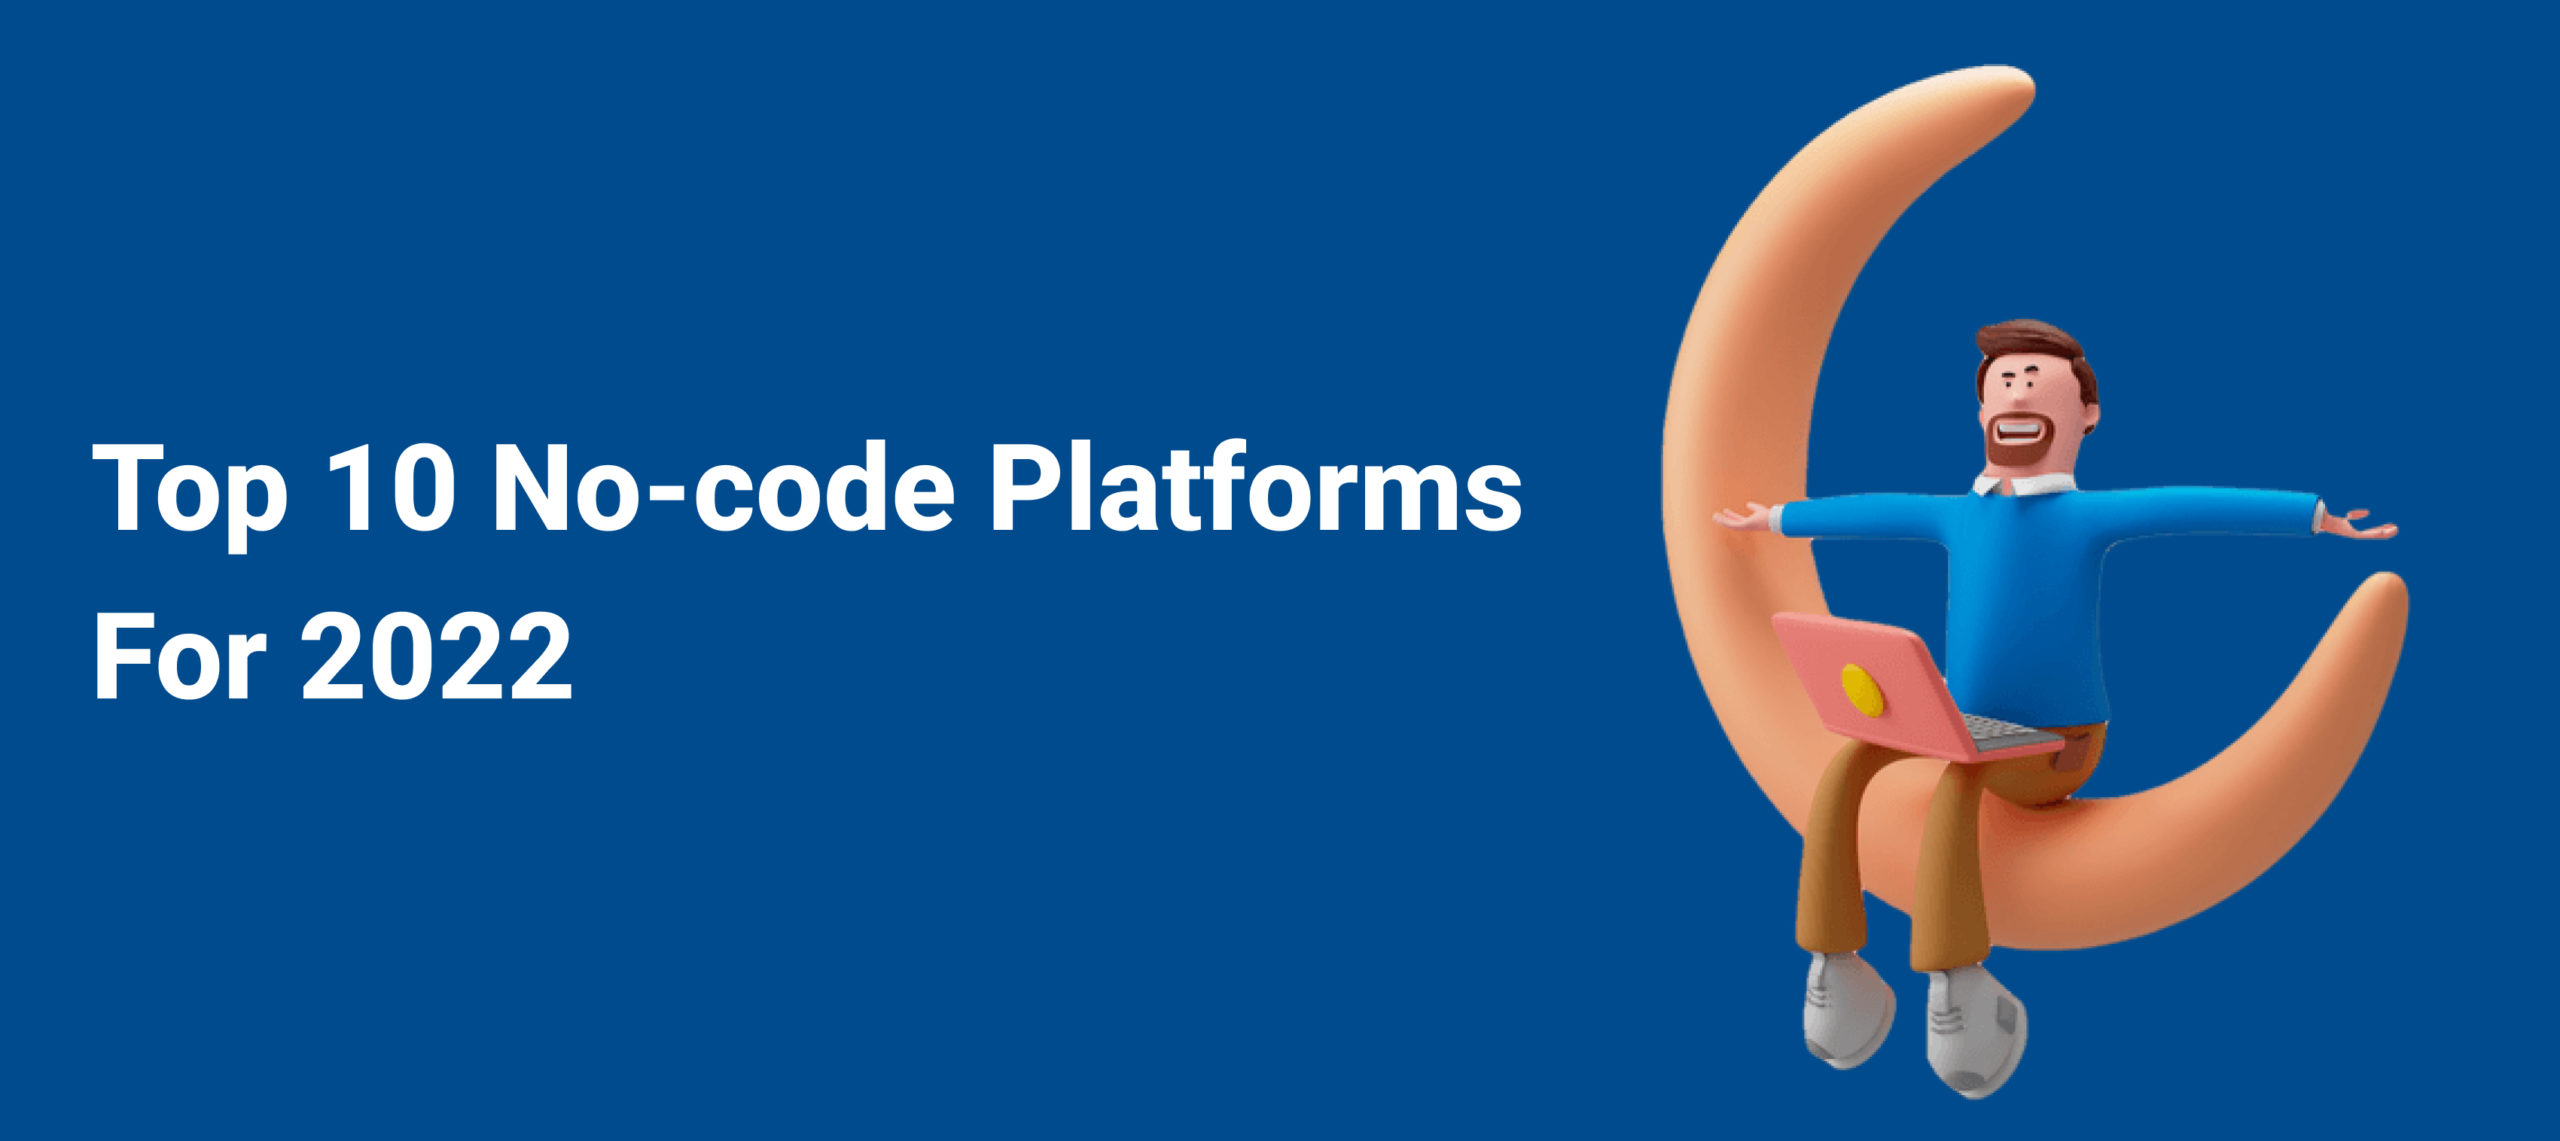  Top 10 No-code Platforms For 2022